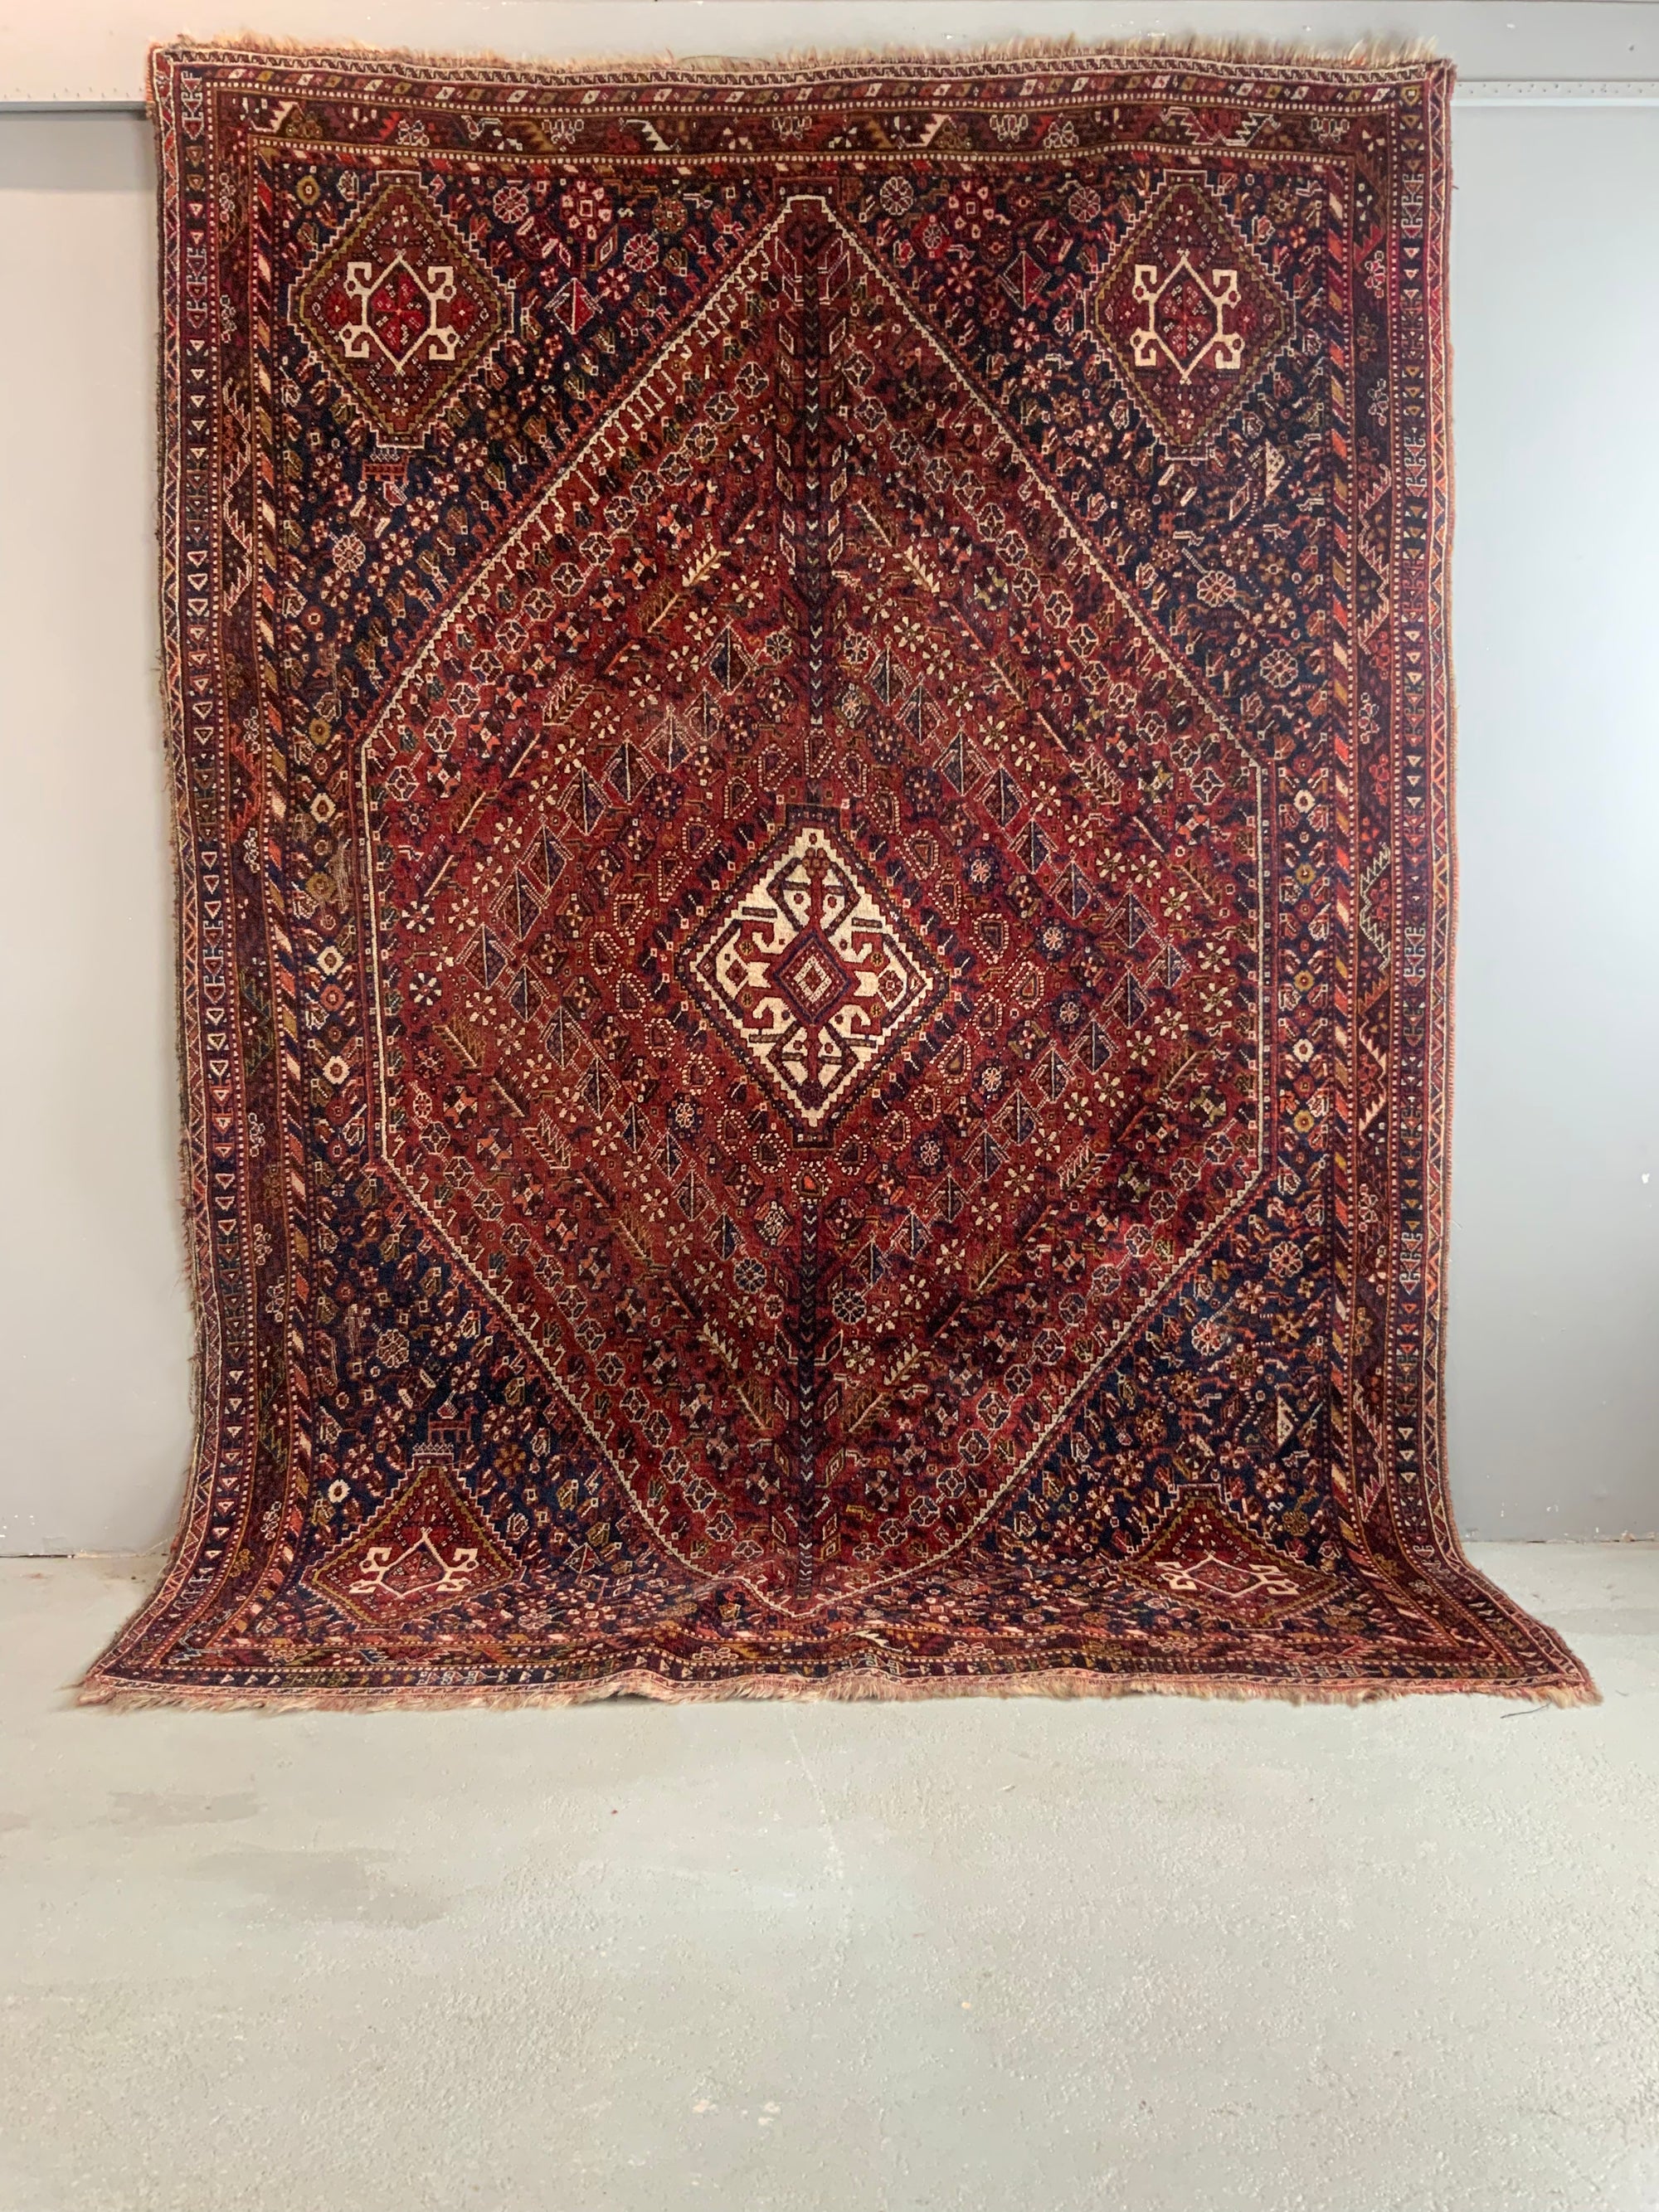 Shirazi Gashgai carpet (292 x 206cm)